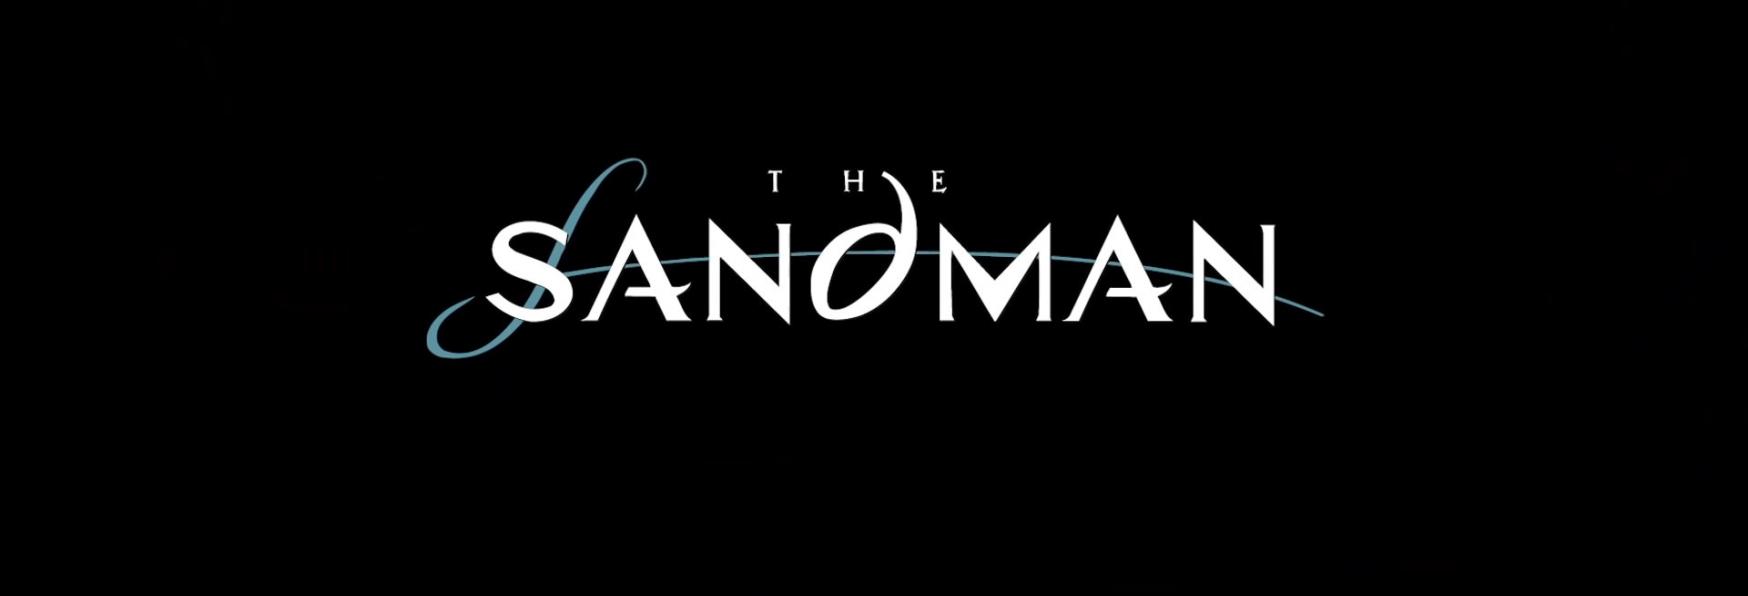 The Sandman: il Trailer Ufficiale e la Data di Uscita della nuova Serie TV Adattamento di Netflix